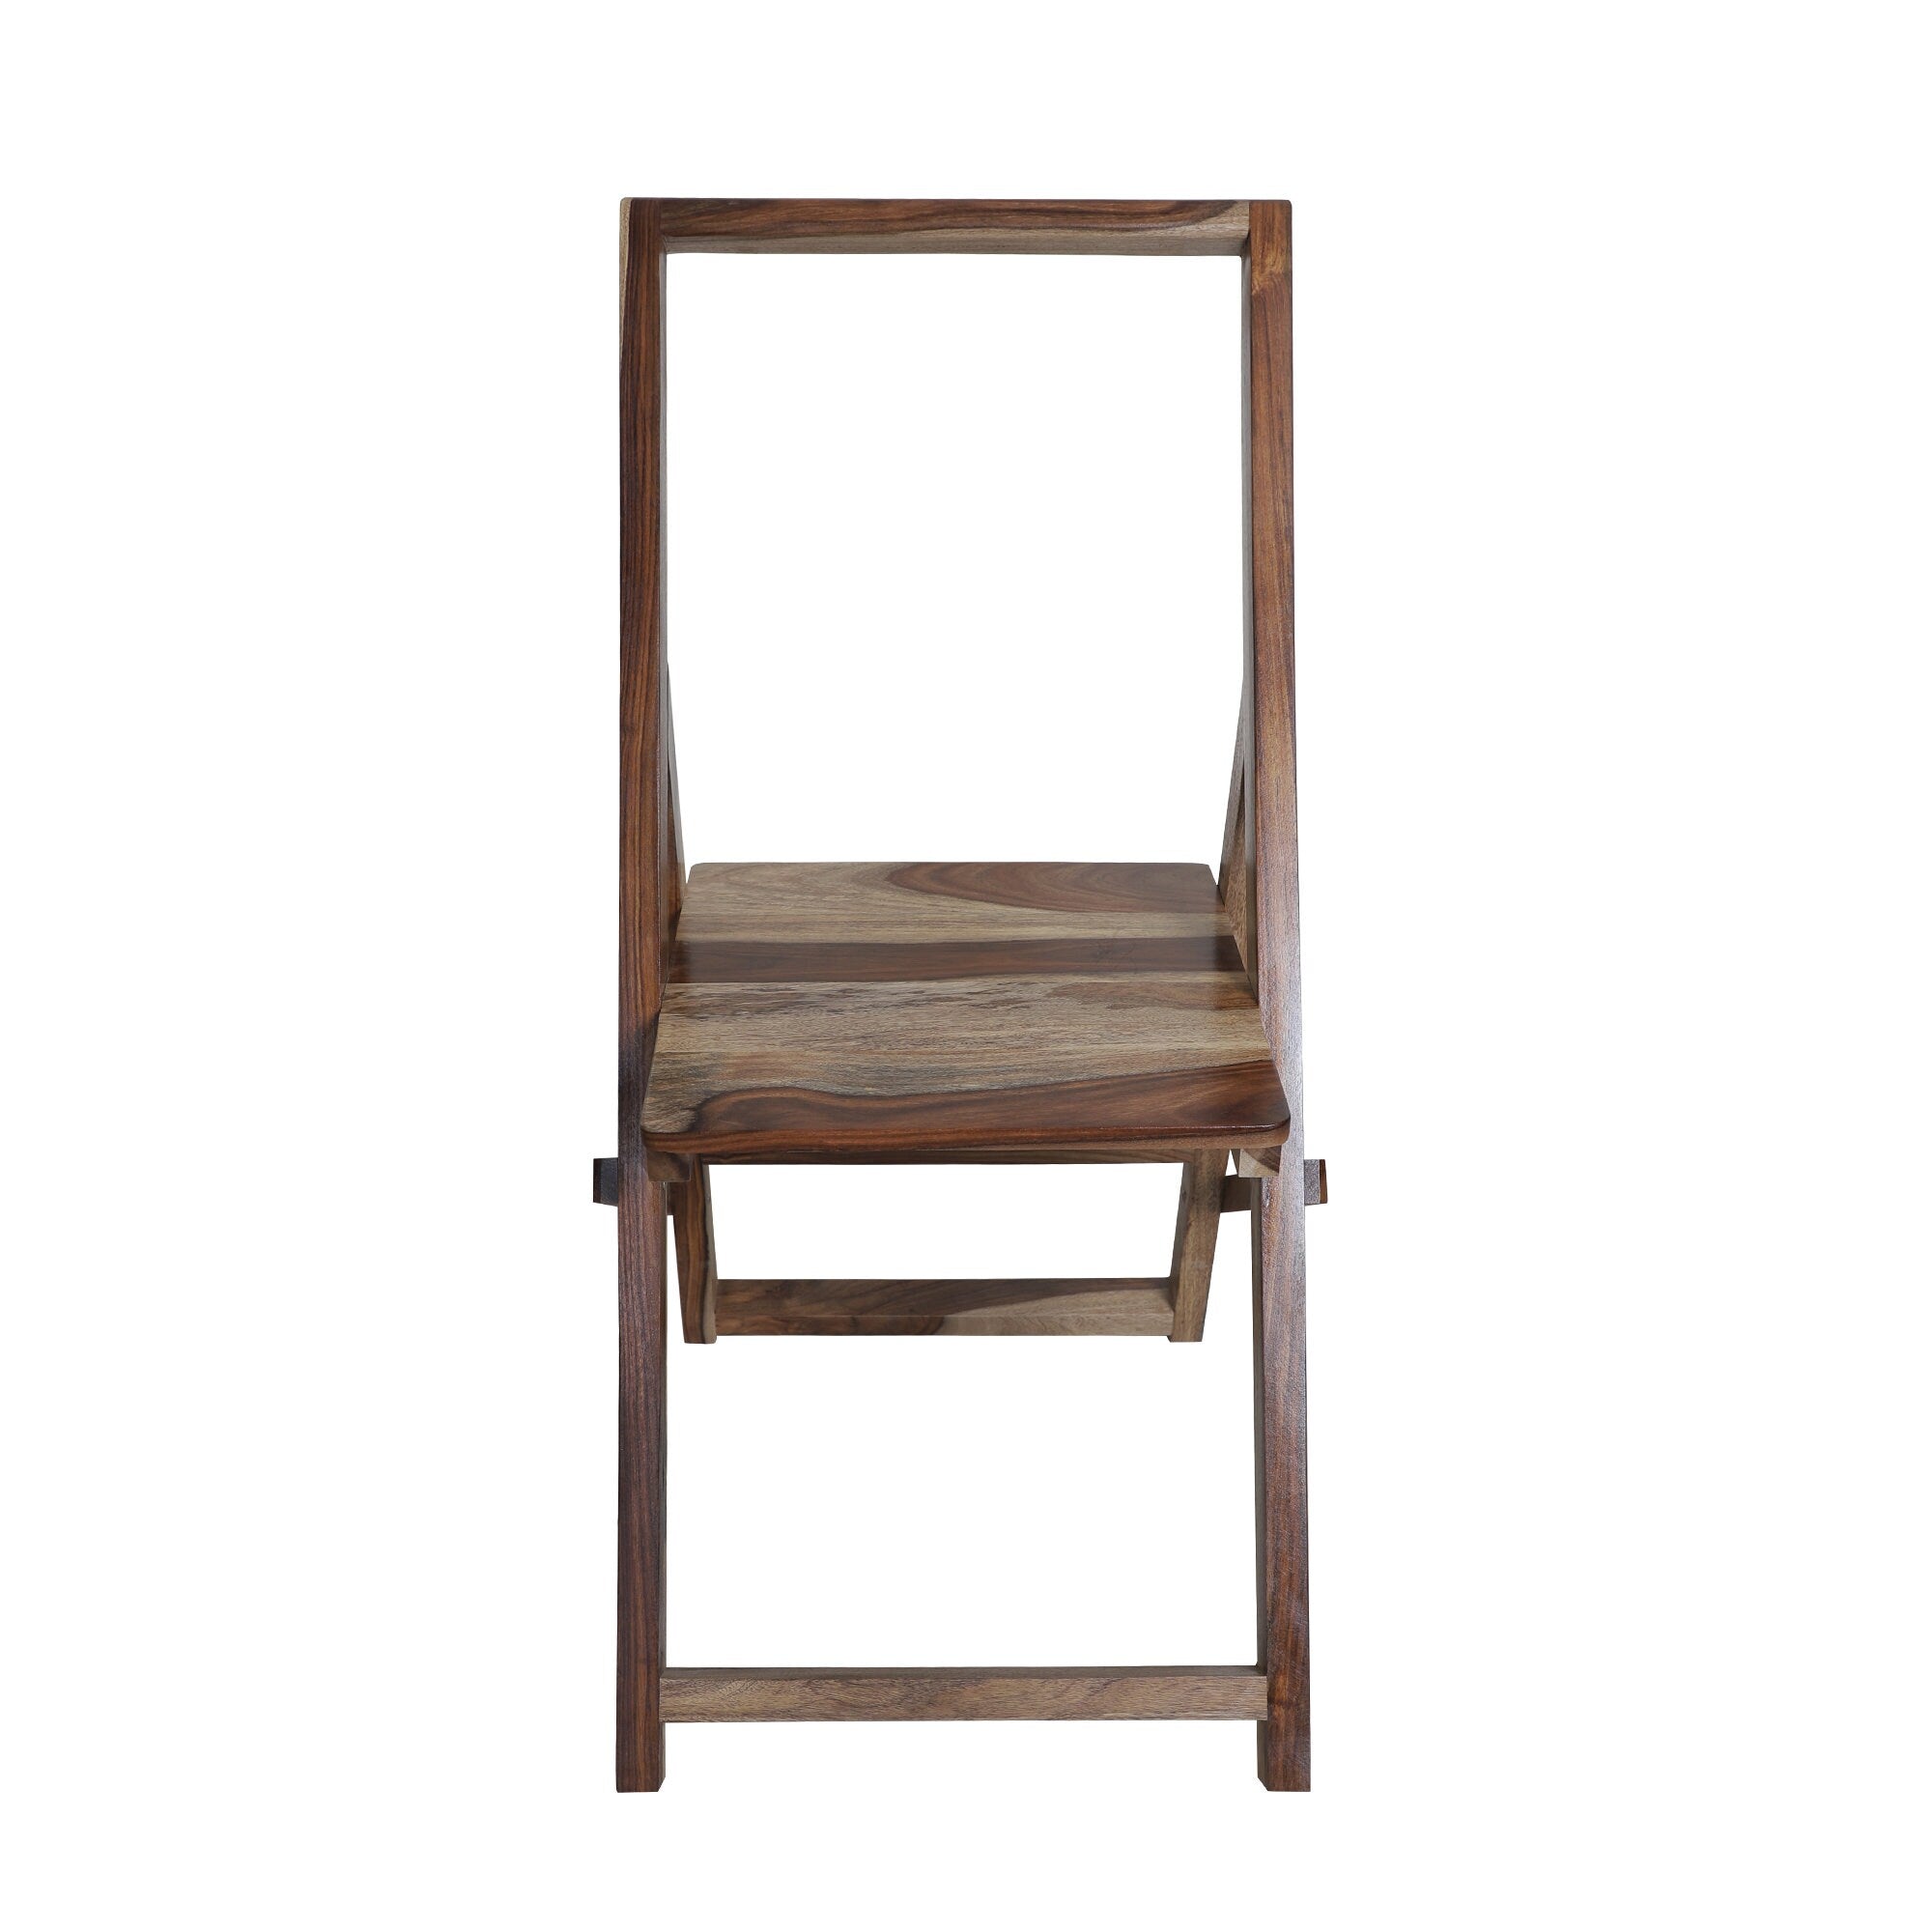 Iyenger Wooden Yoga Chair